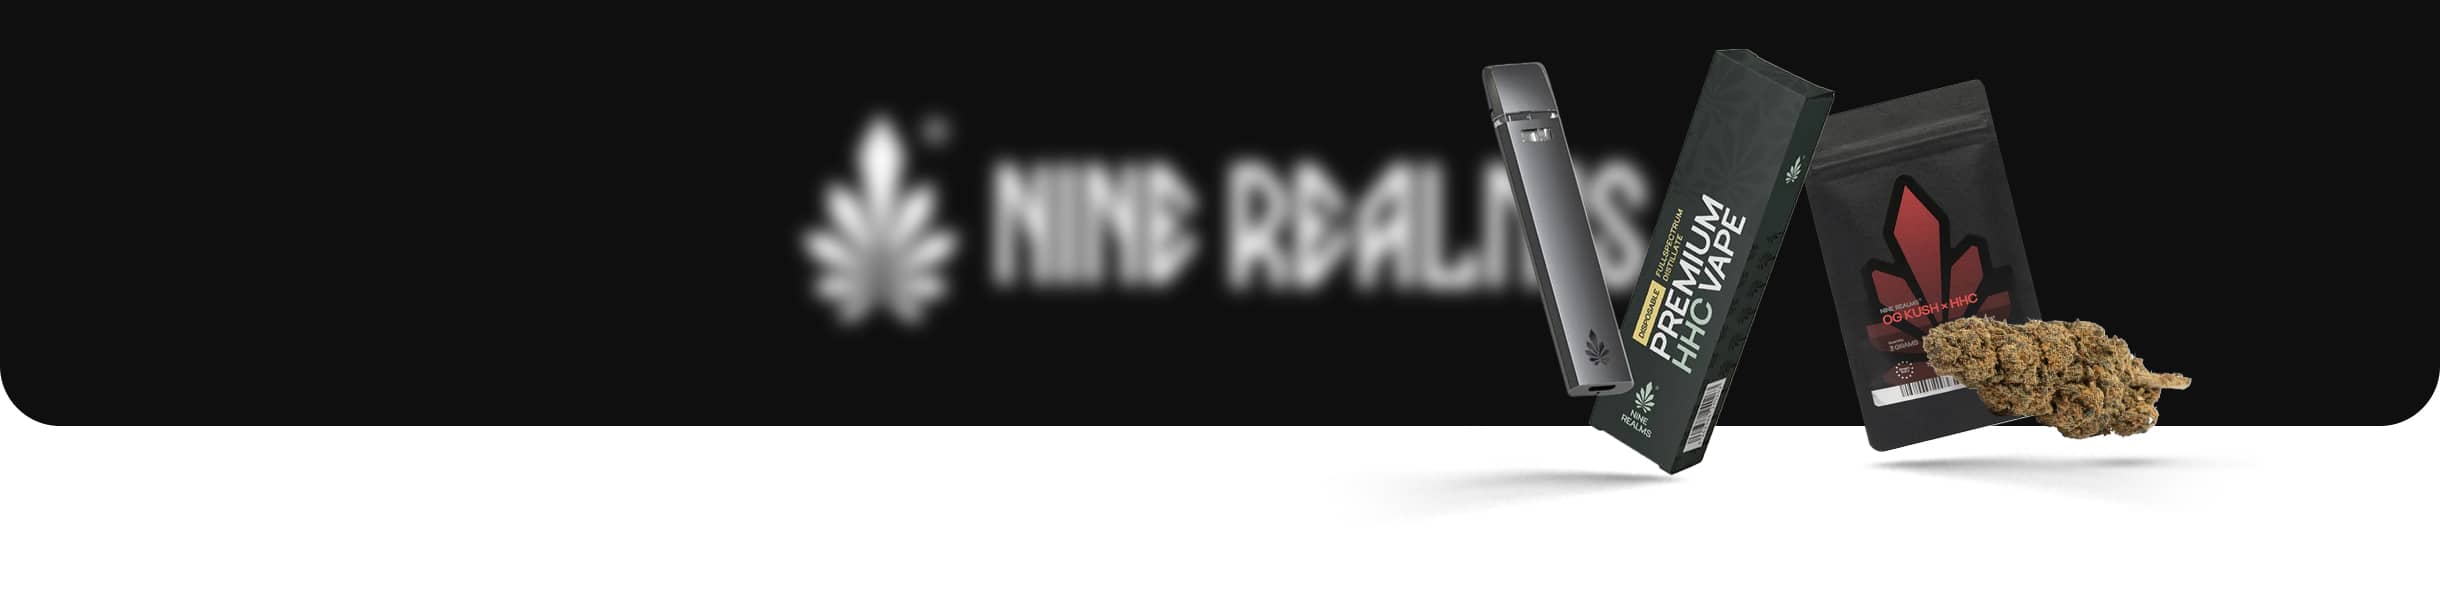 Nine Realms - Titlebild